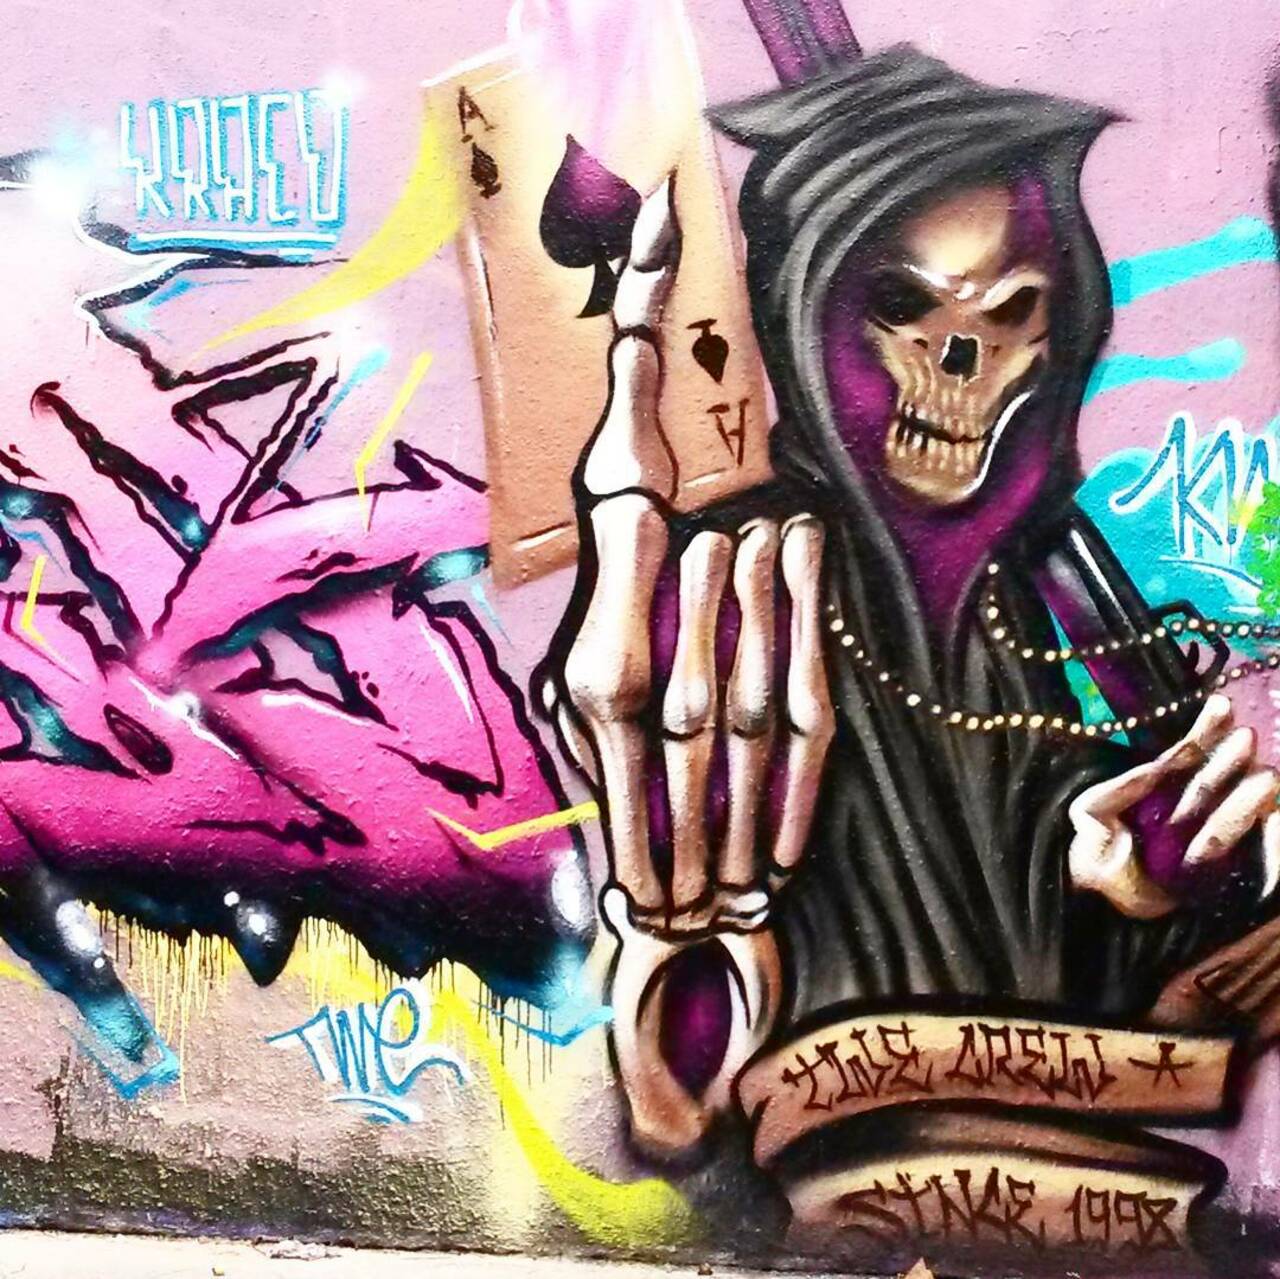 #Paris #graffiti photo by @princessepepett http://ift.tt/1Gw8cQN #StreetArt https://t.co/umDvT7npRE